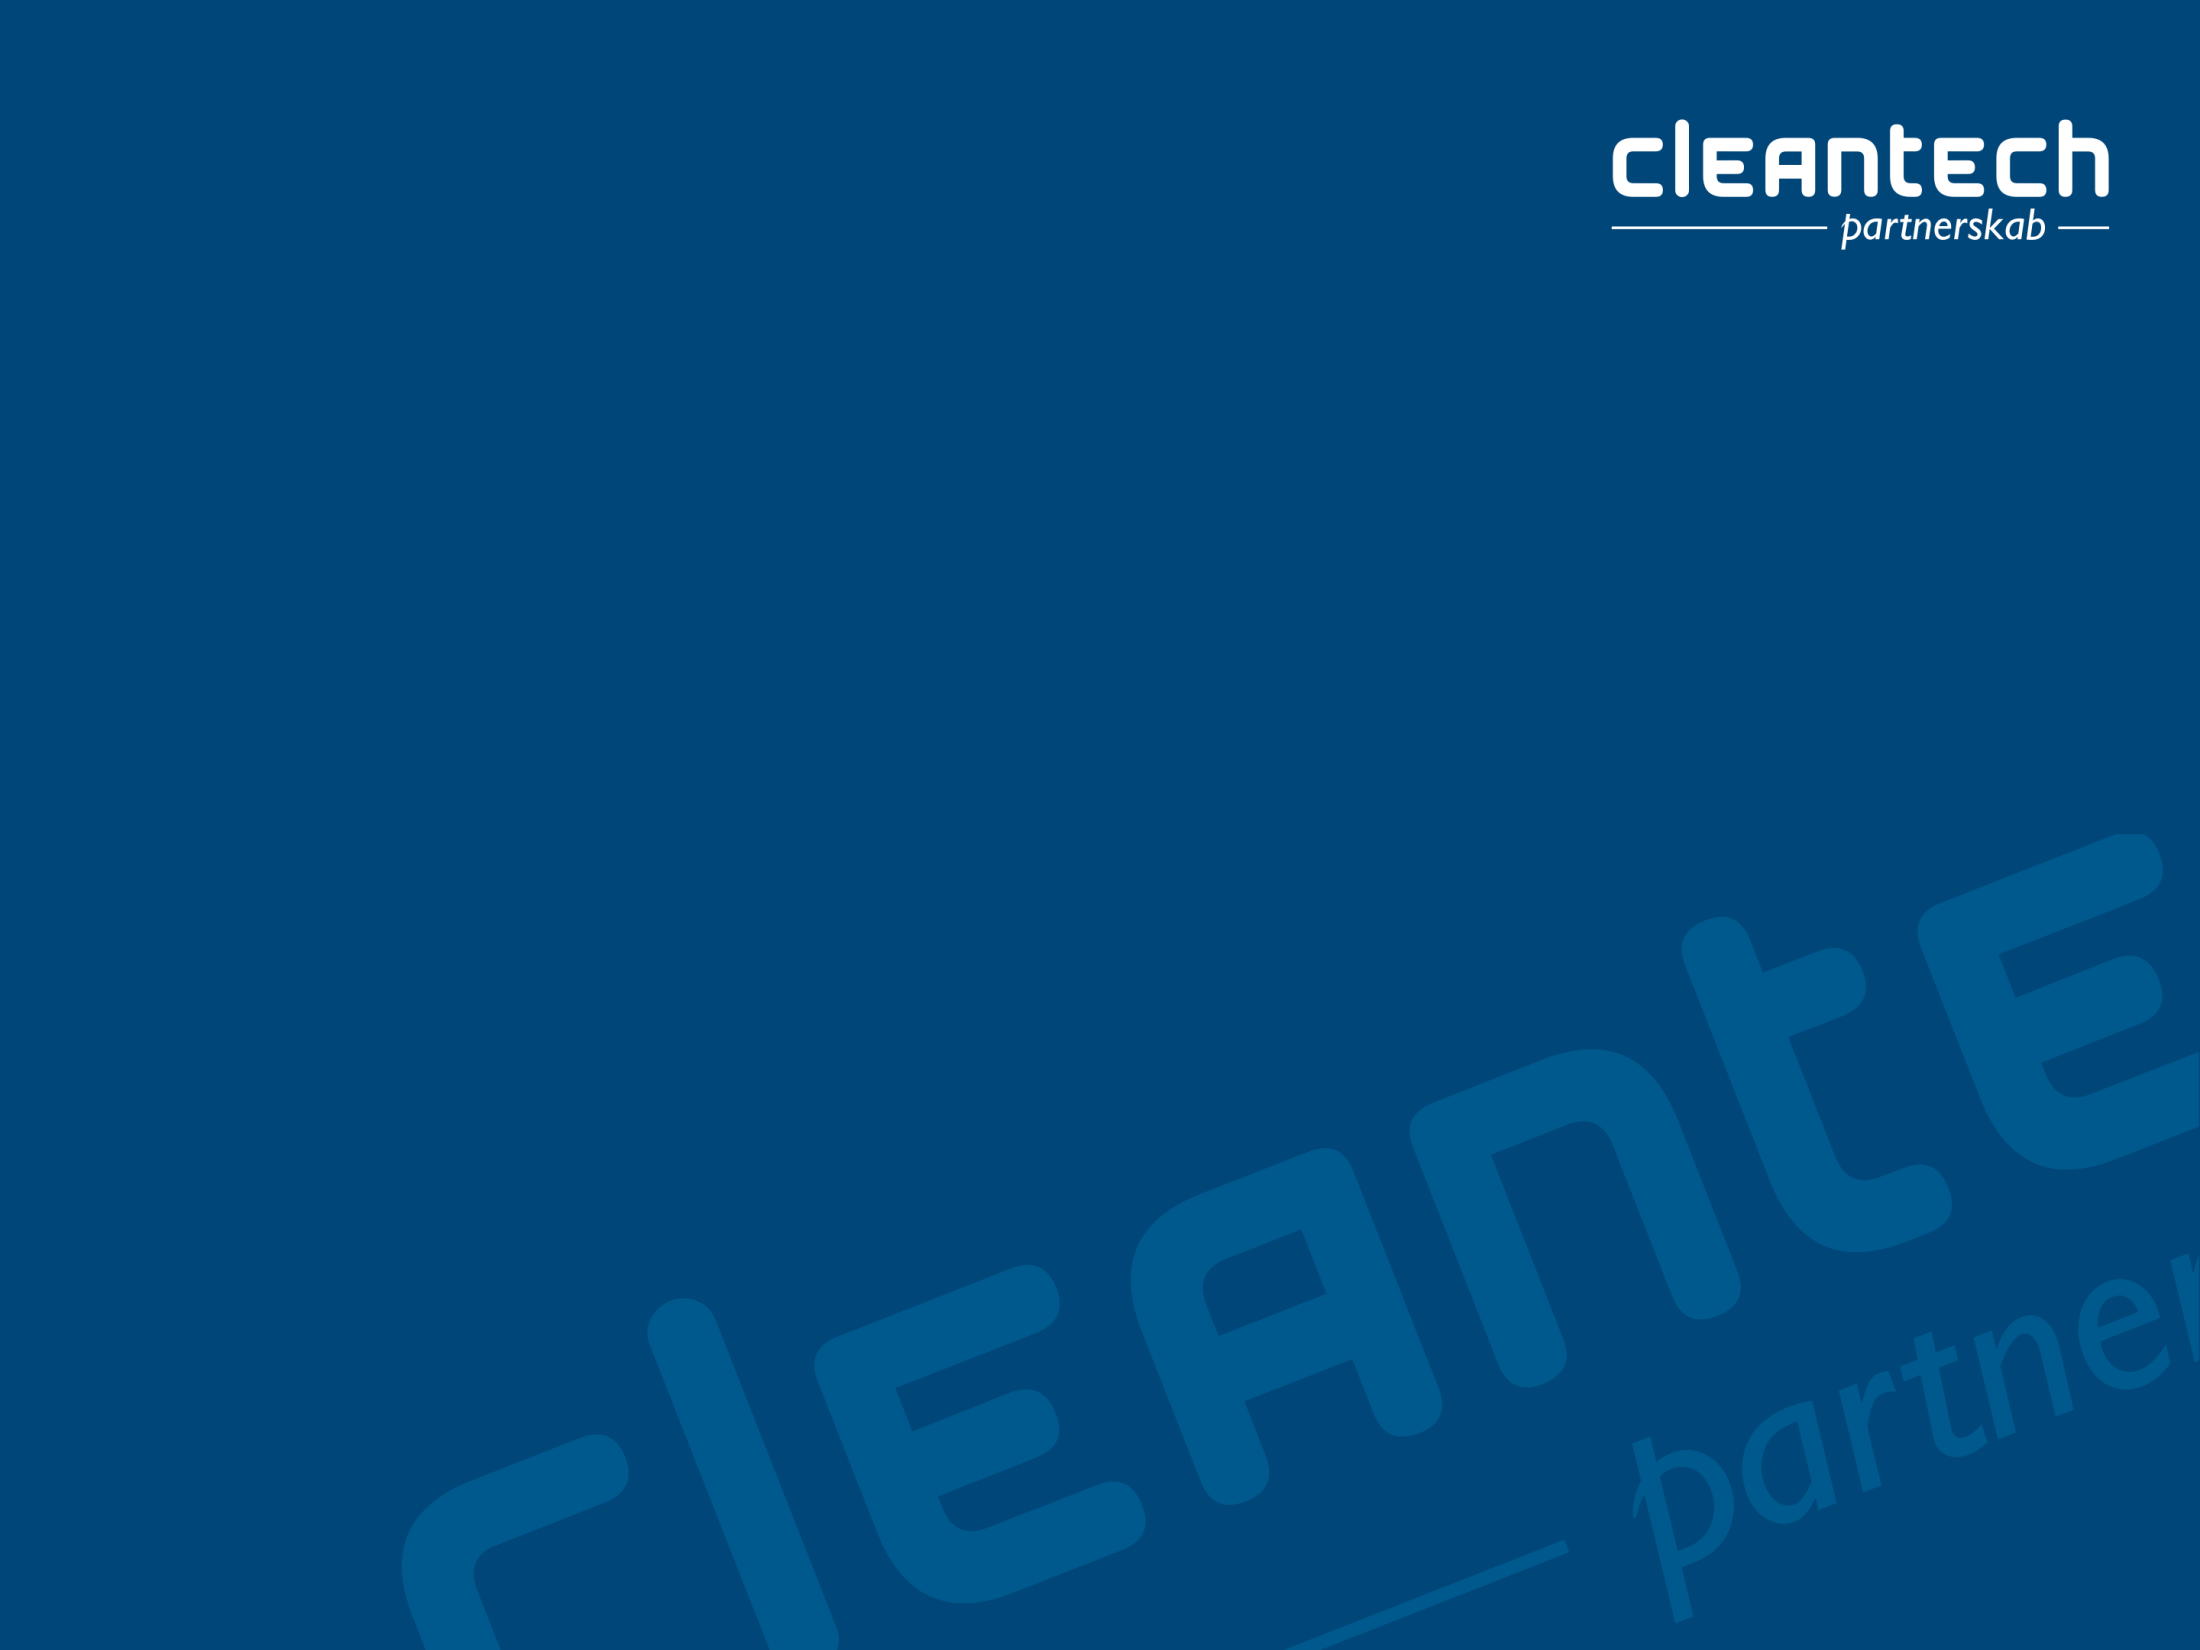 Cleantech Partnerskab